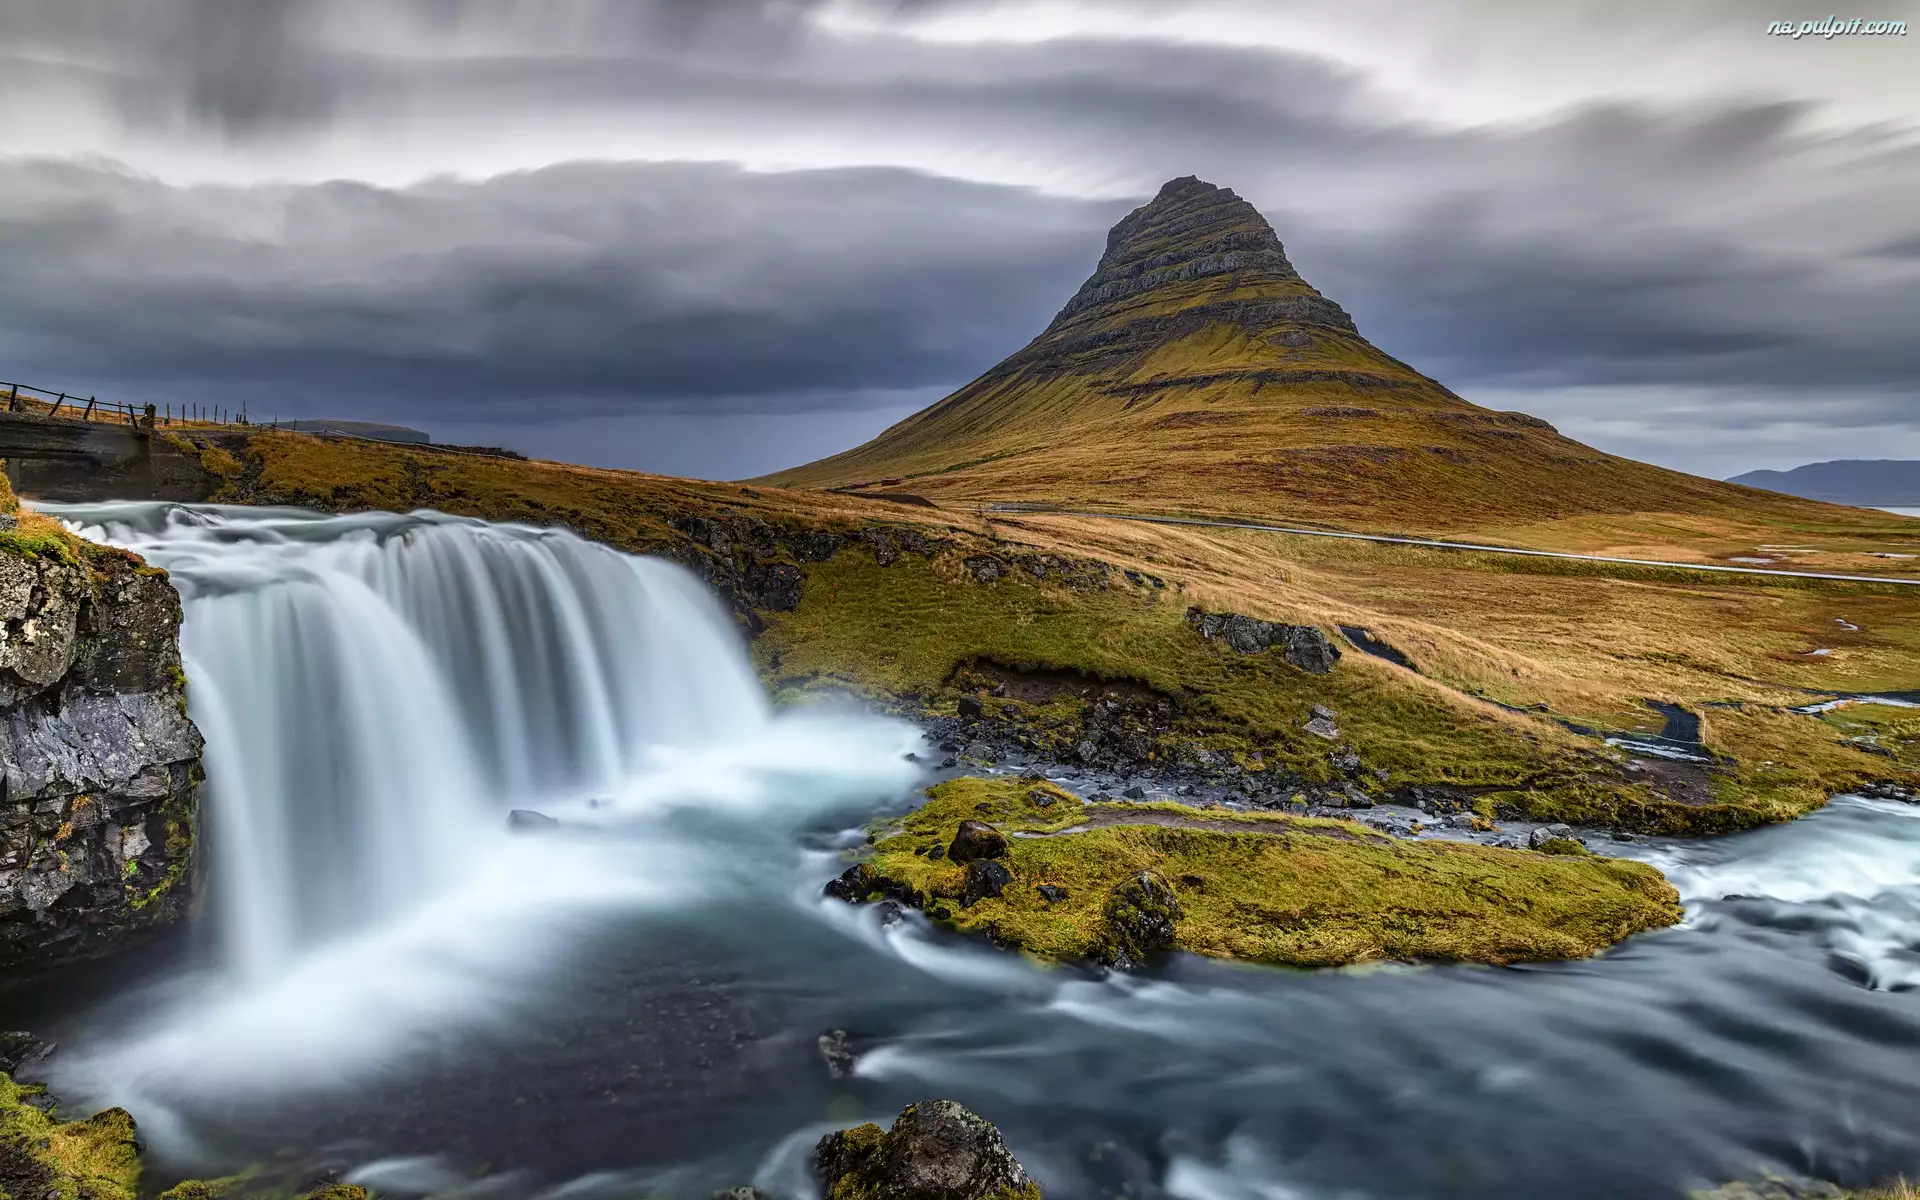 Wodospad Kirkjufellsfoss, Rzeka, Islandia, Góra Kirkjufell, Półwysep Snaefellsnes, Chmury, Ciemne